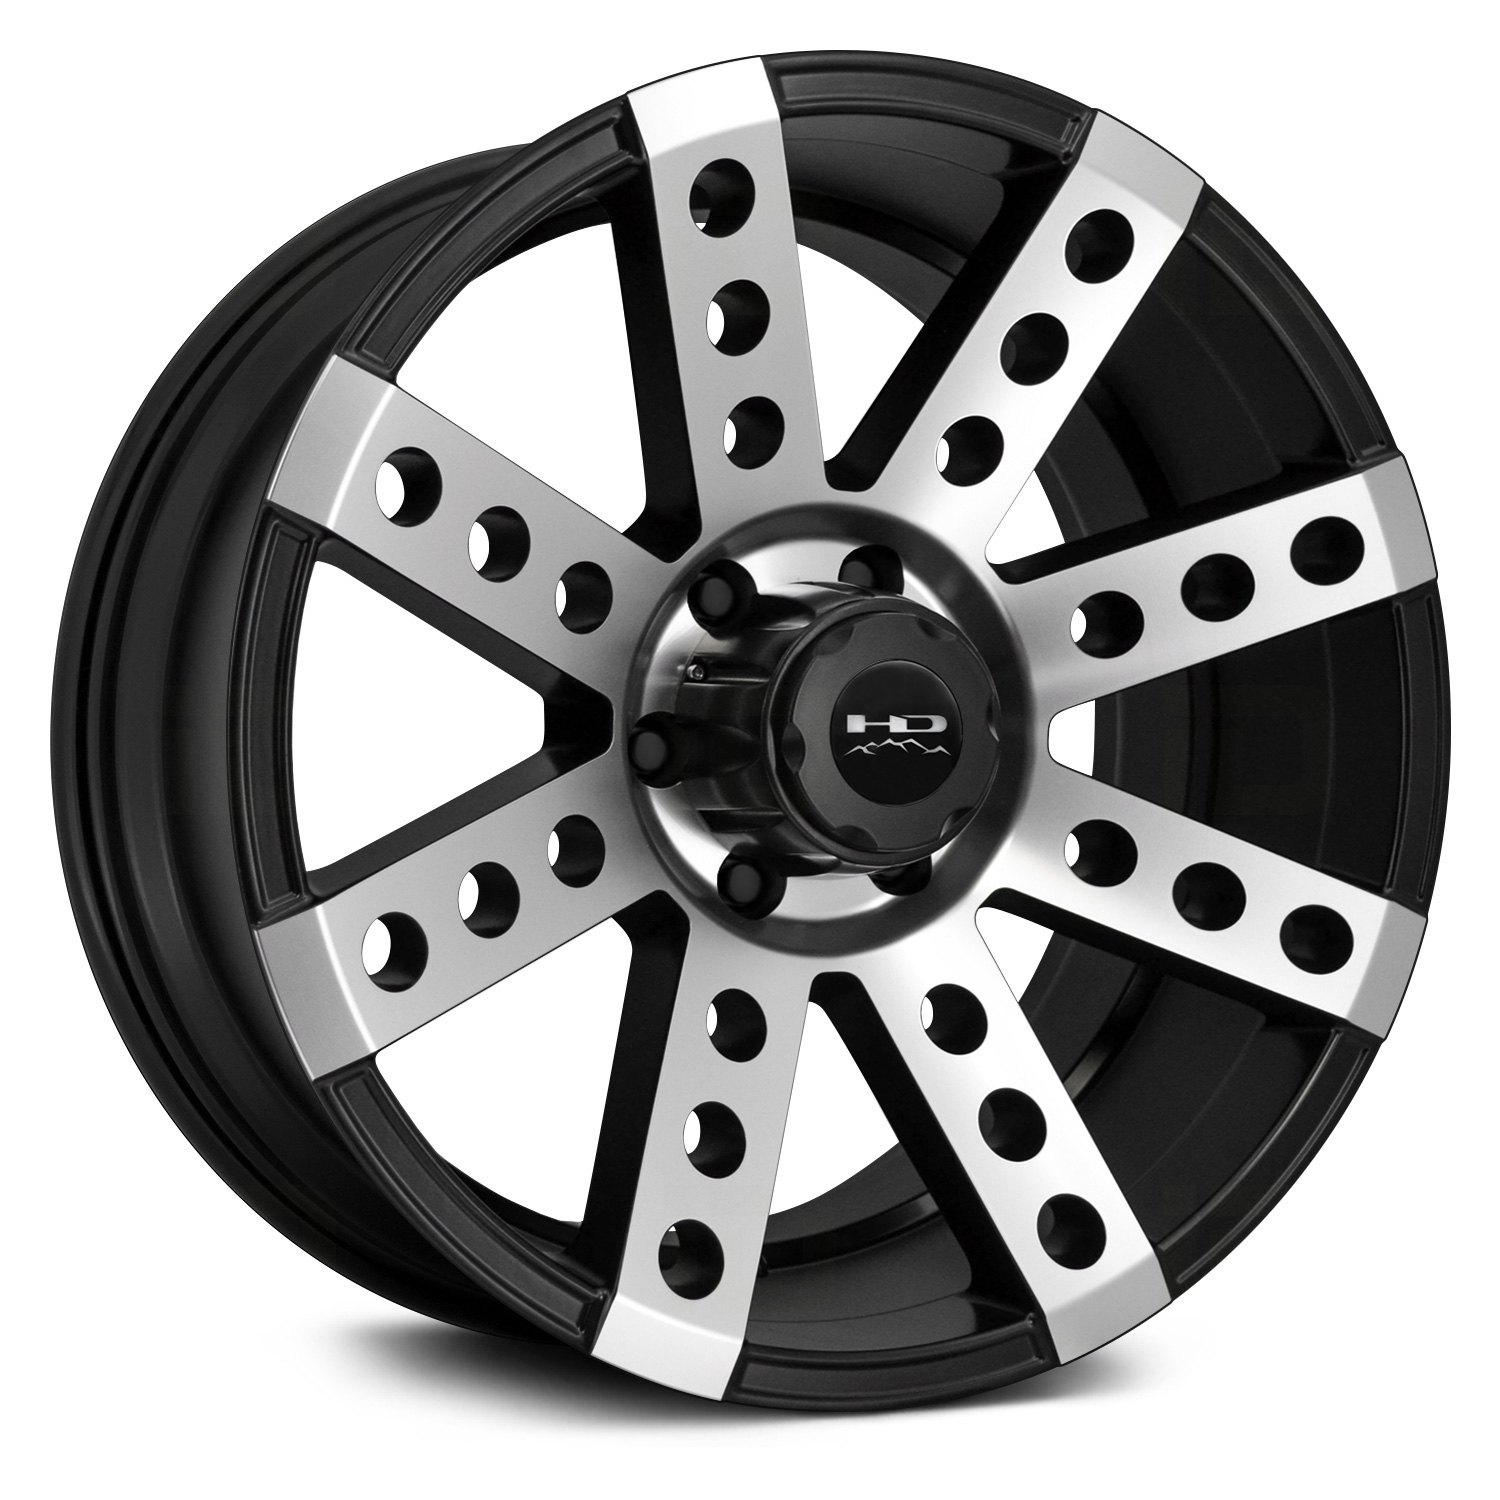 HD Buckshot Wheels 22x11 (-44, 8x180, 124.1) Black Rims Set of 4.